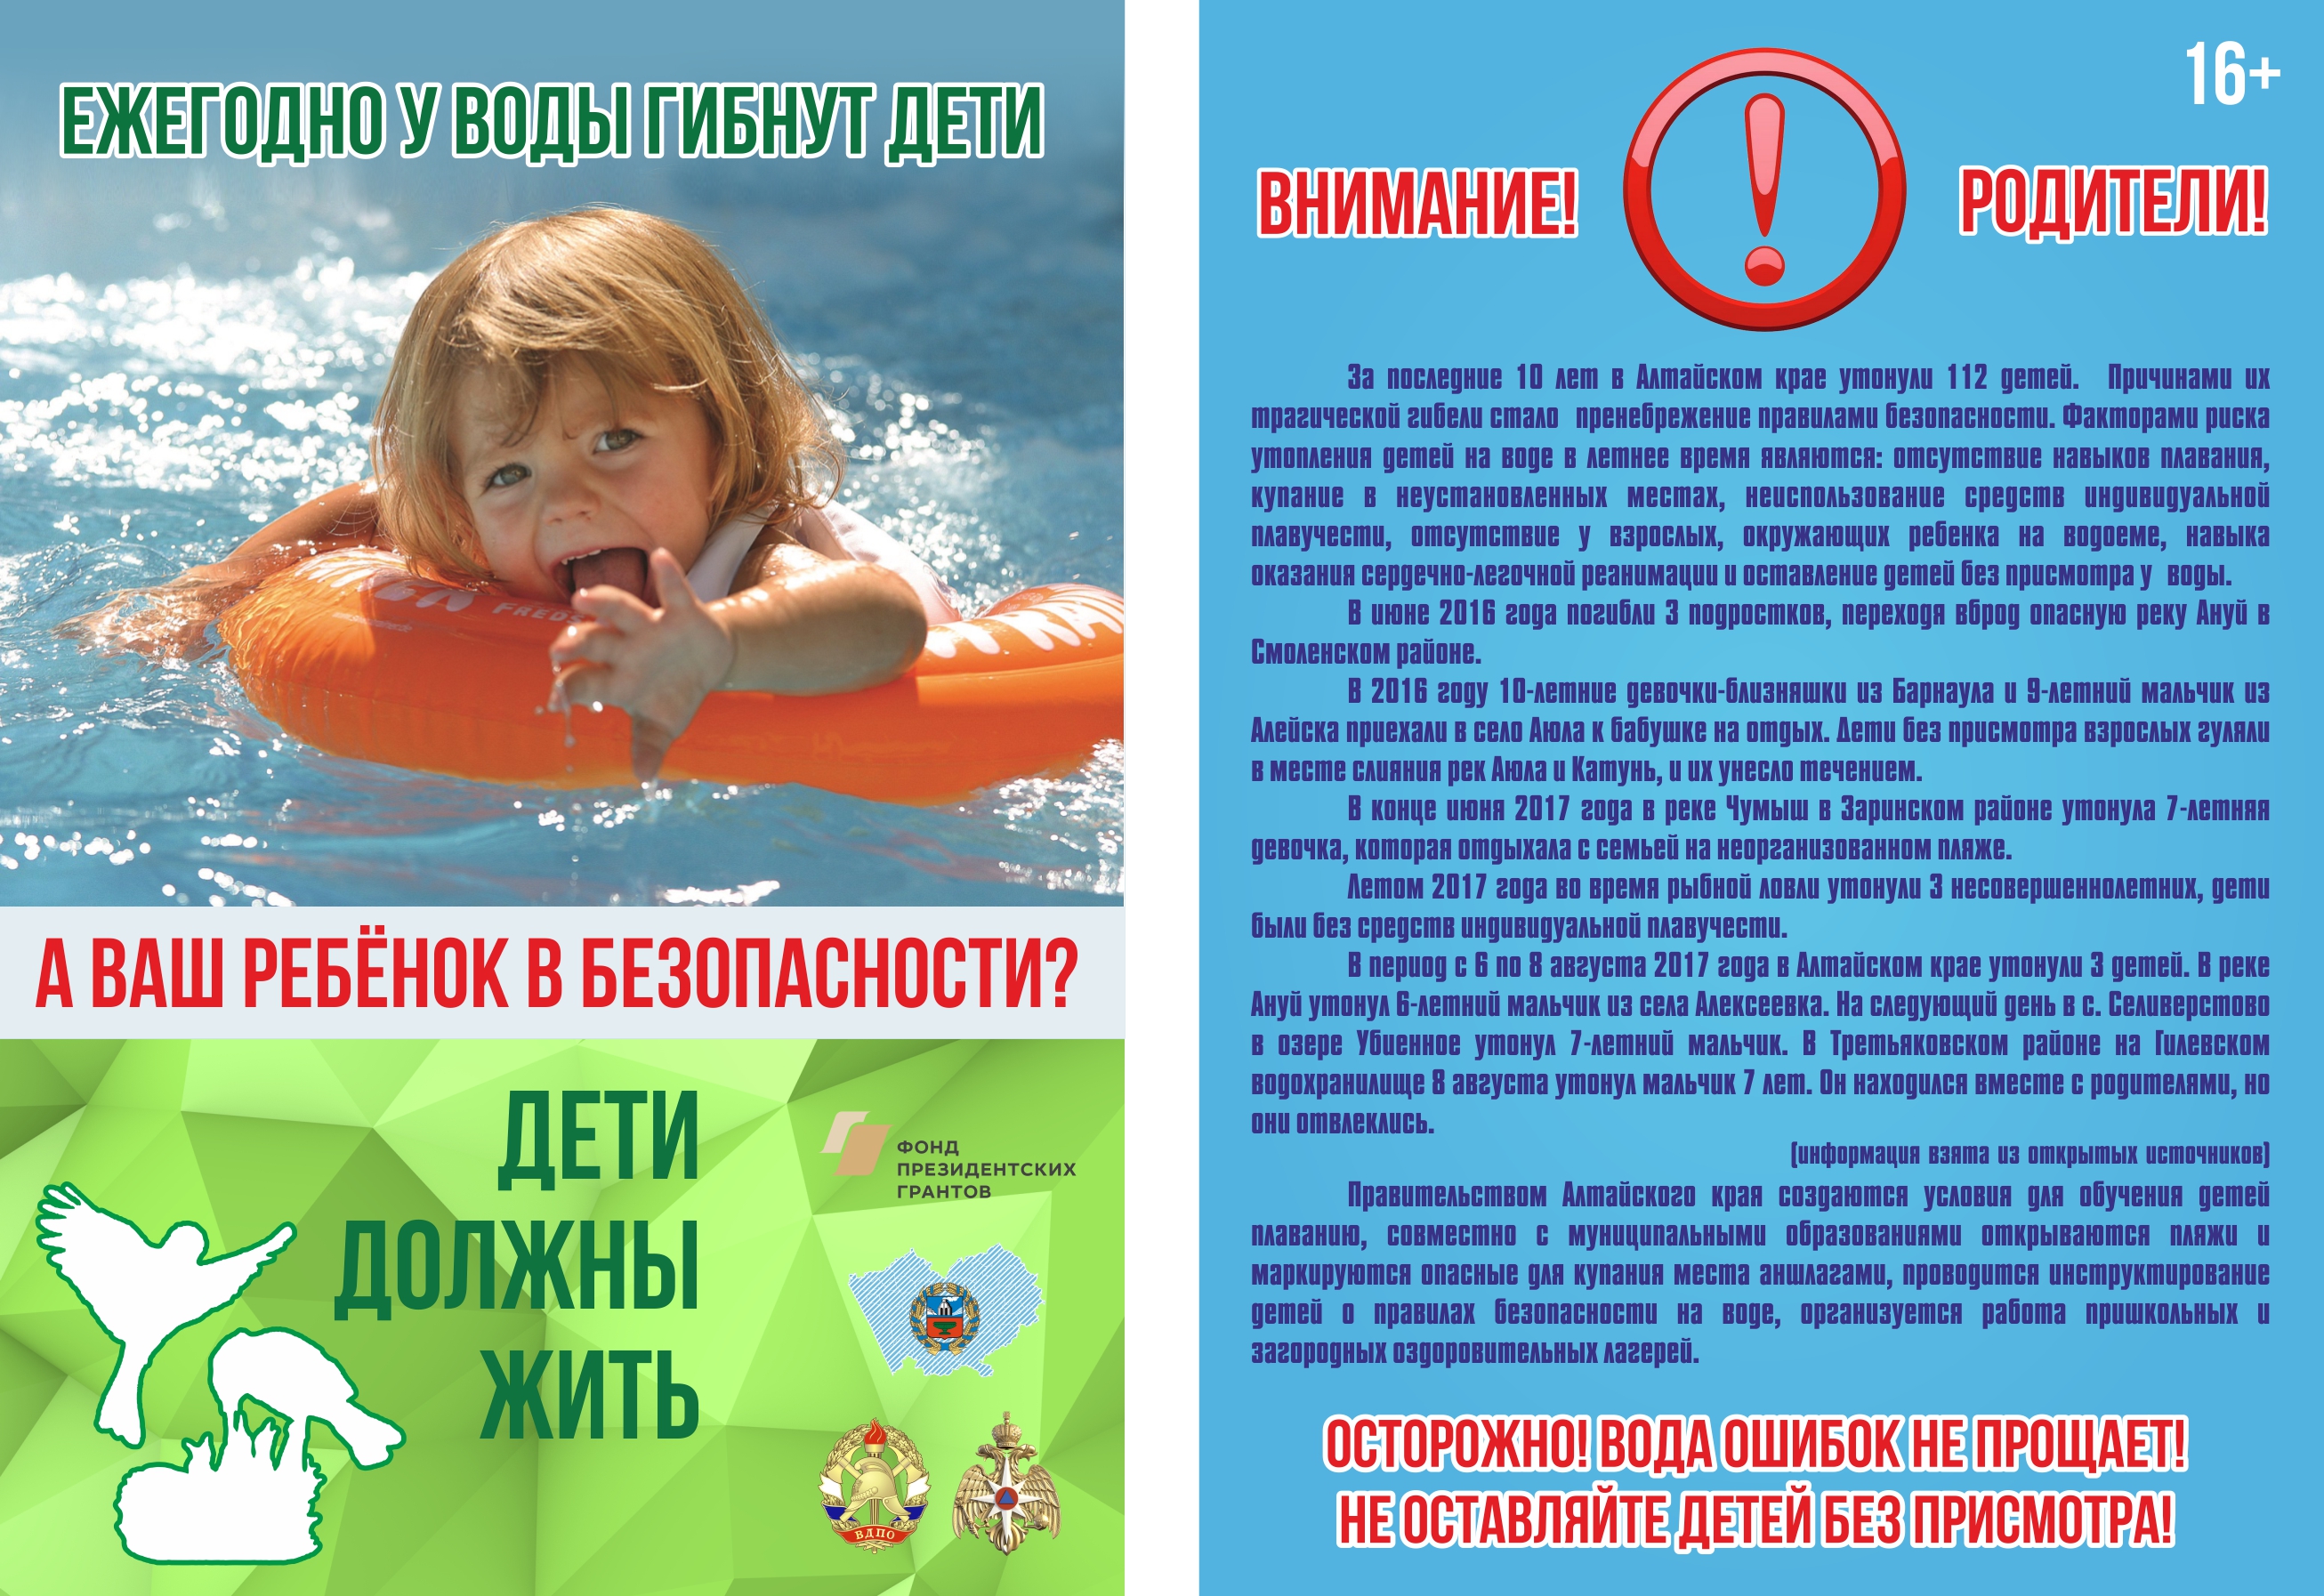 Как научить ребенка плавать: лучшие упражнения для детей возраста от 3 до 8 лет